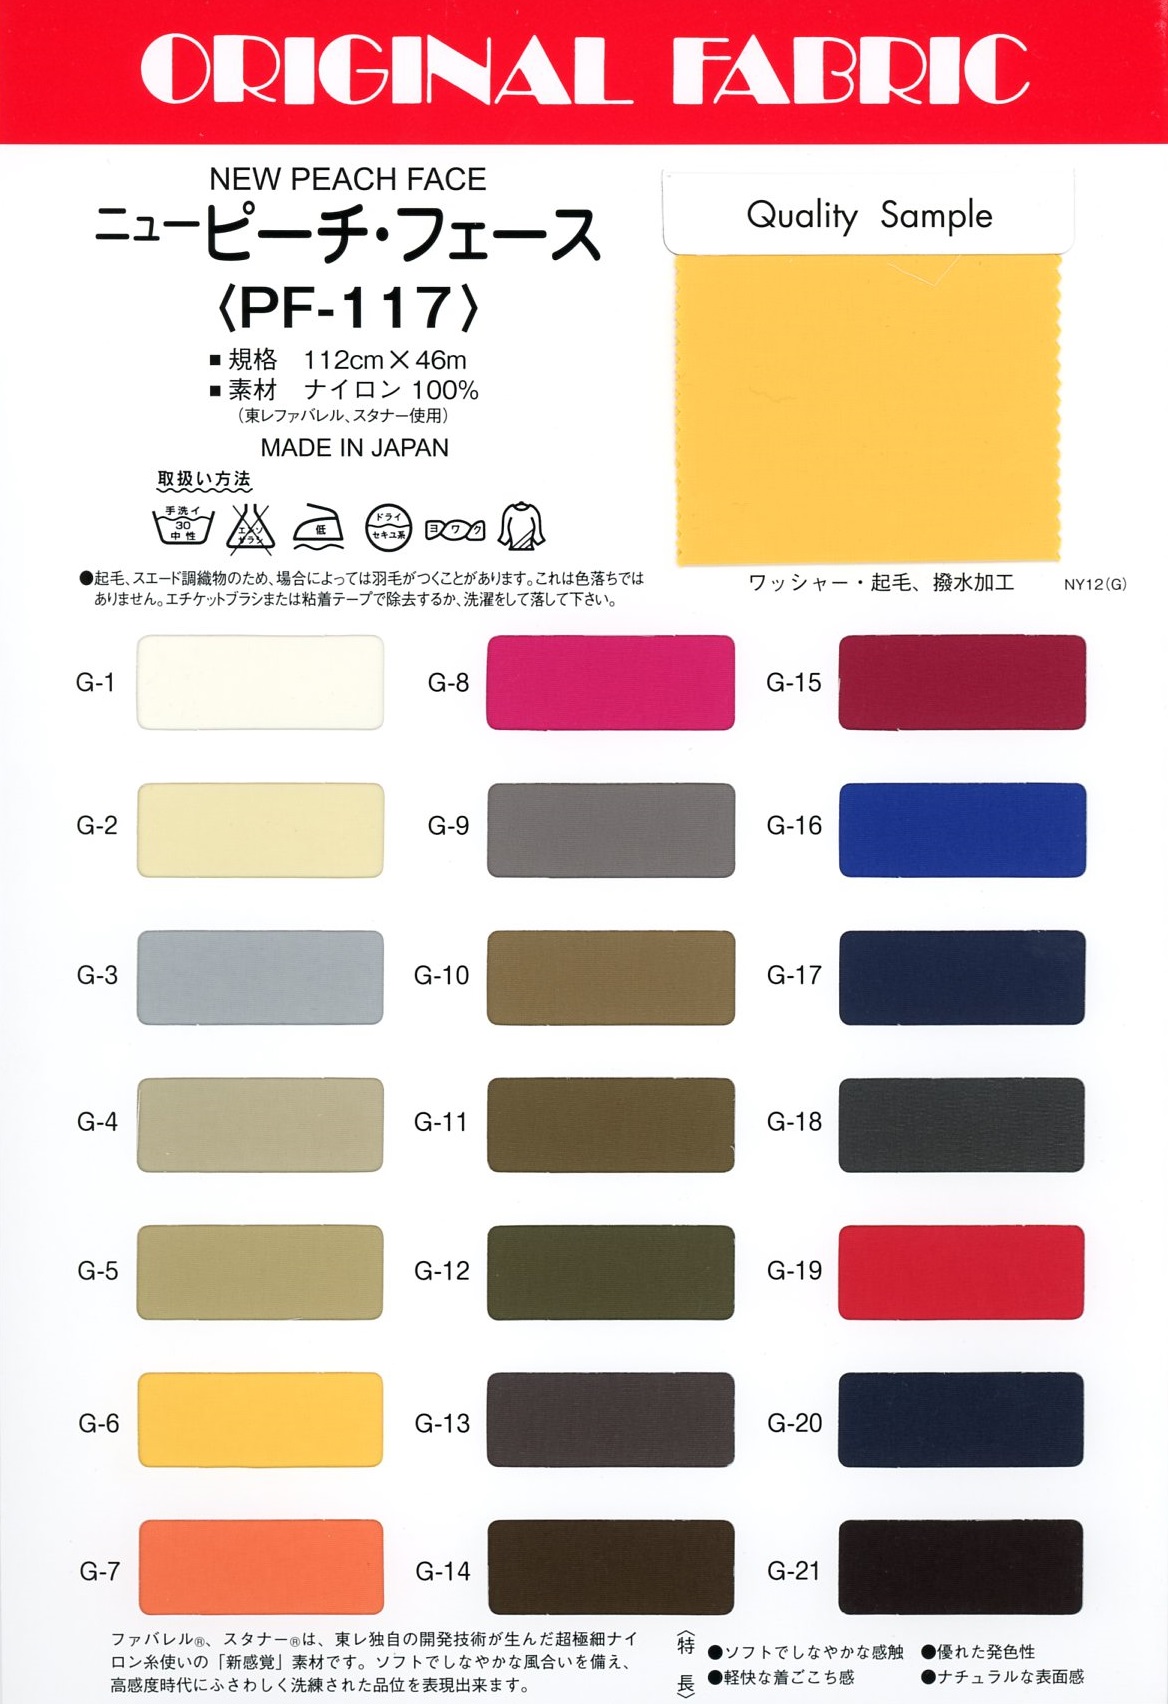 PF117 Nouveau Visage De Pêche[Fabrication De Textile] Masuda